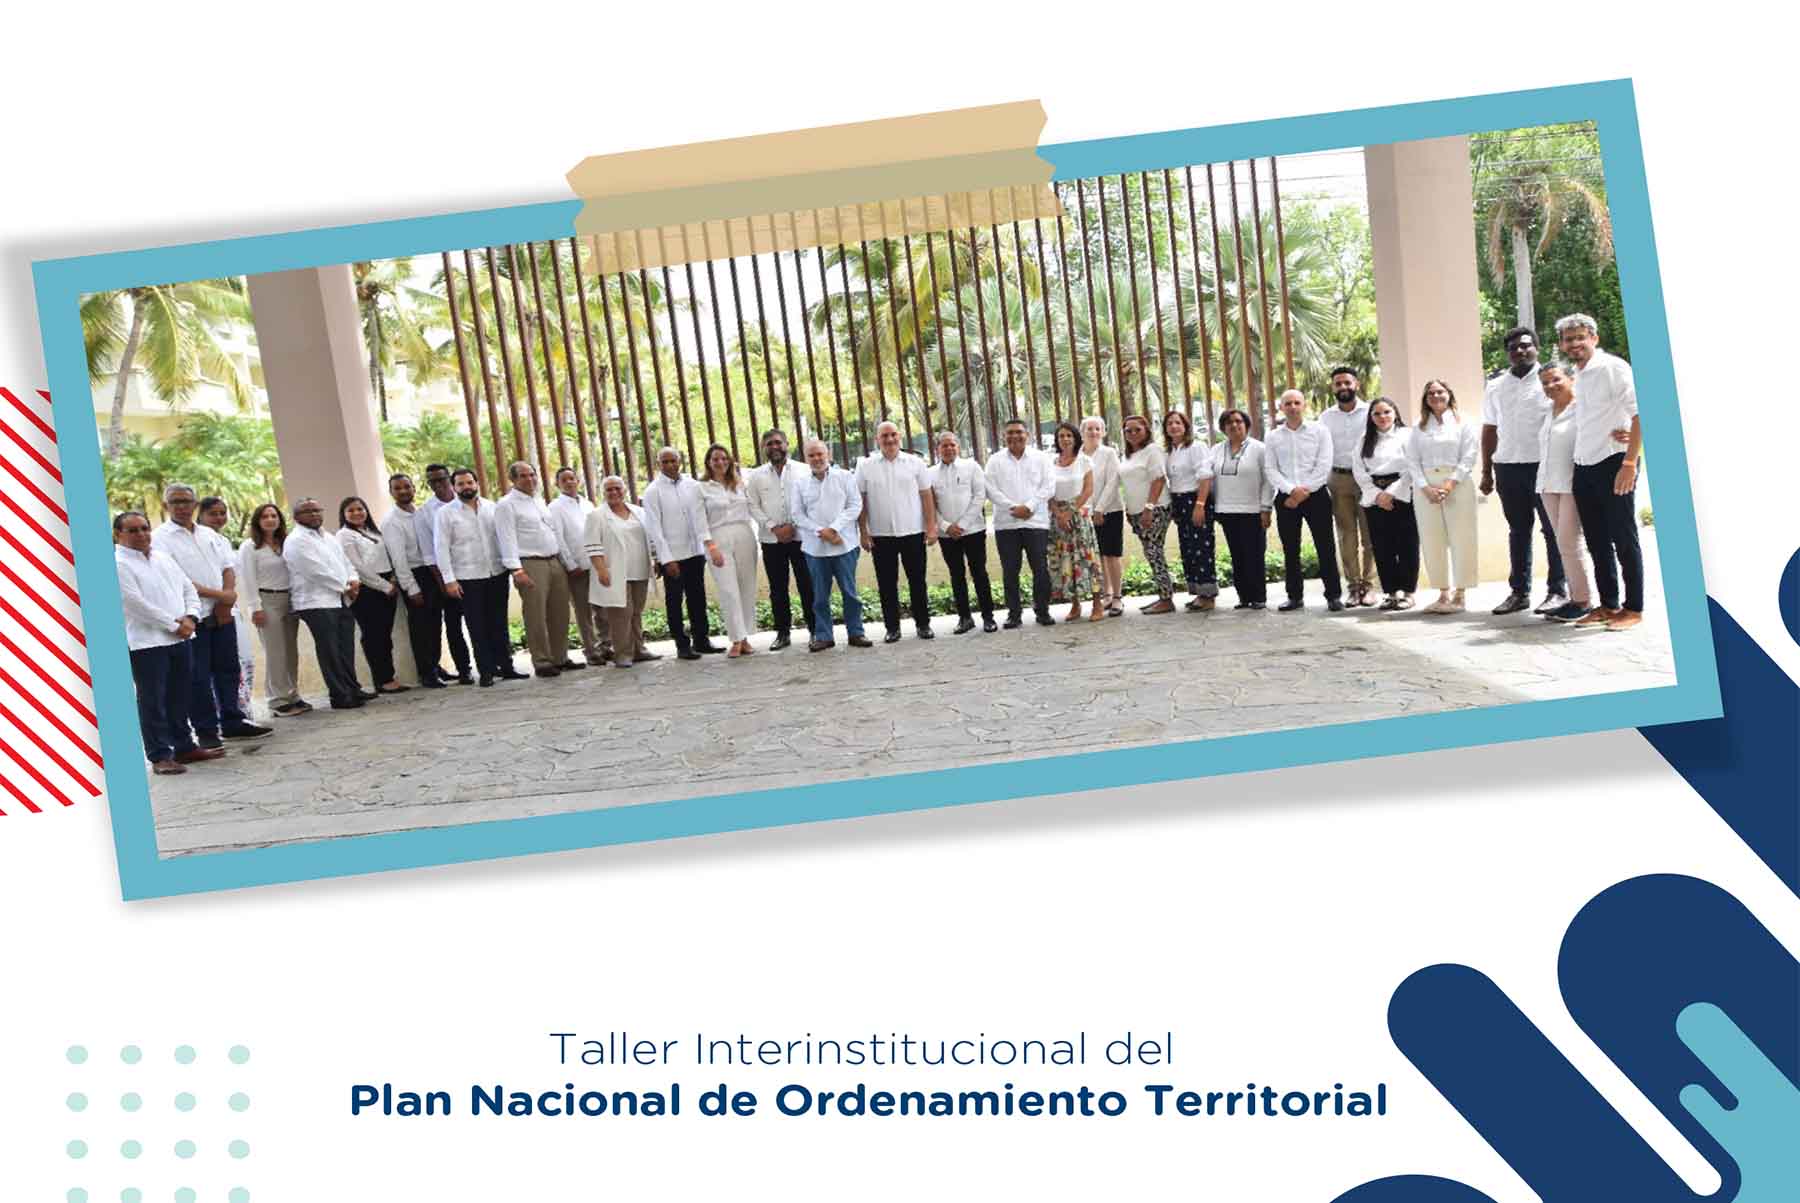 Taller Interinstitucional del Plan Nacional de Ordenamiento Territorial